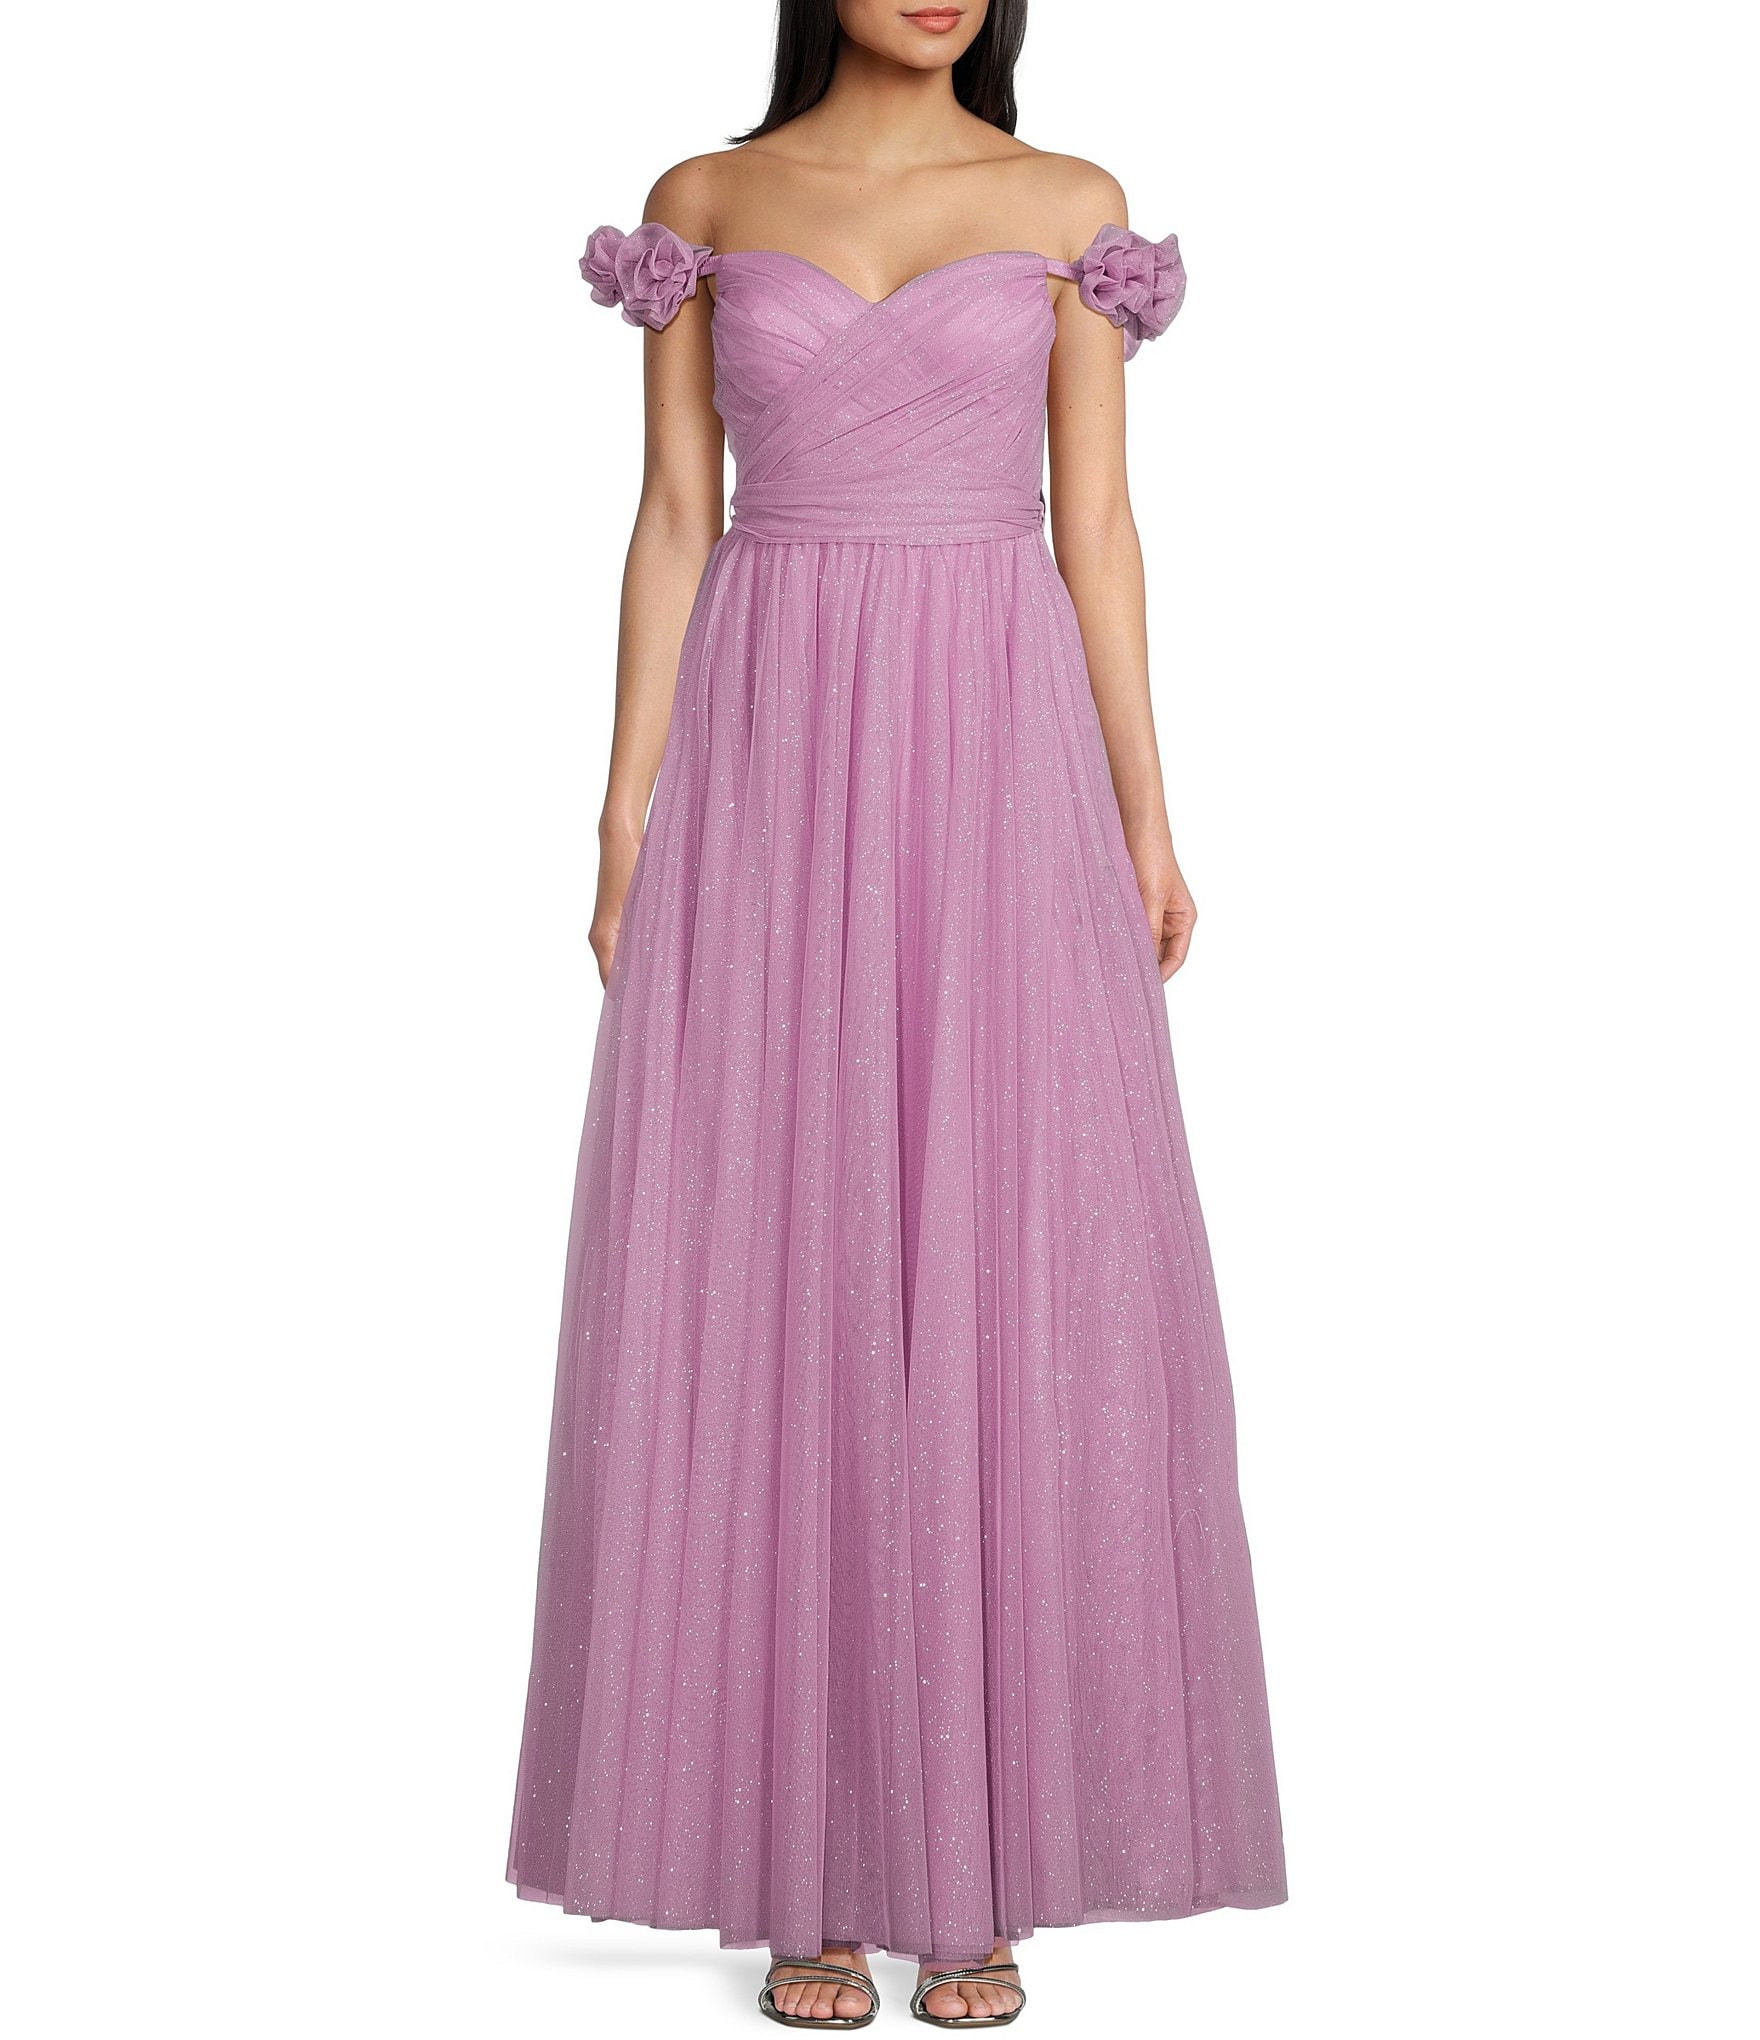 Mesh bandeau dress - Light purple/Ombre - Ladies